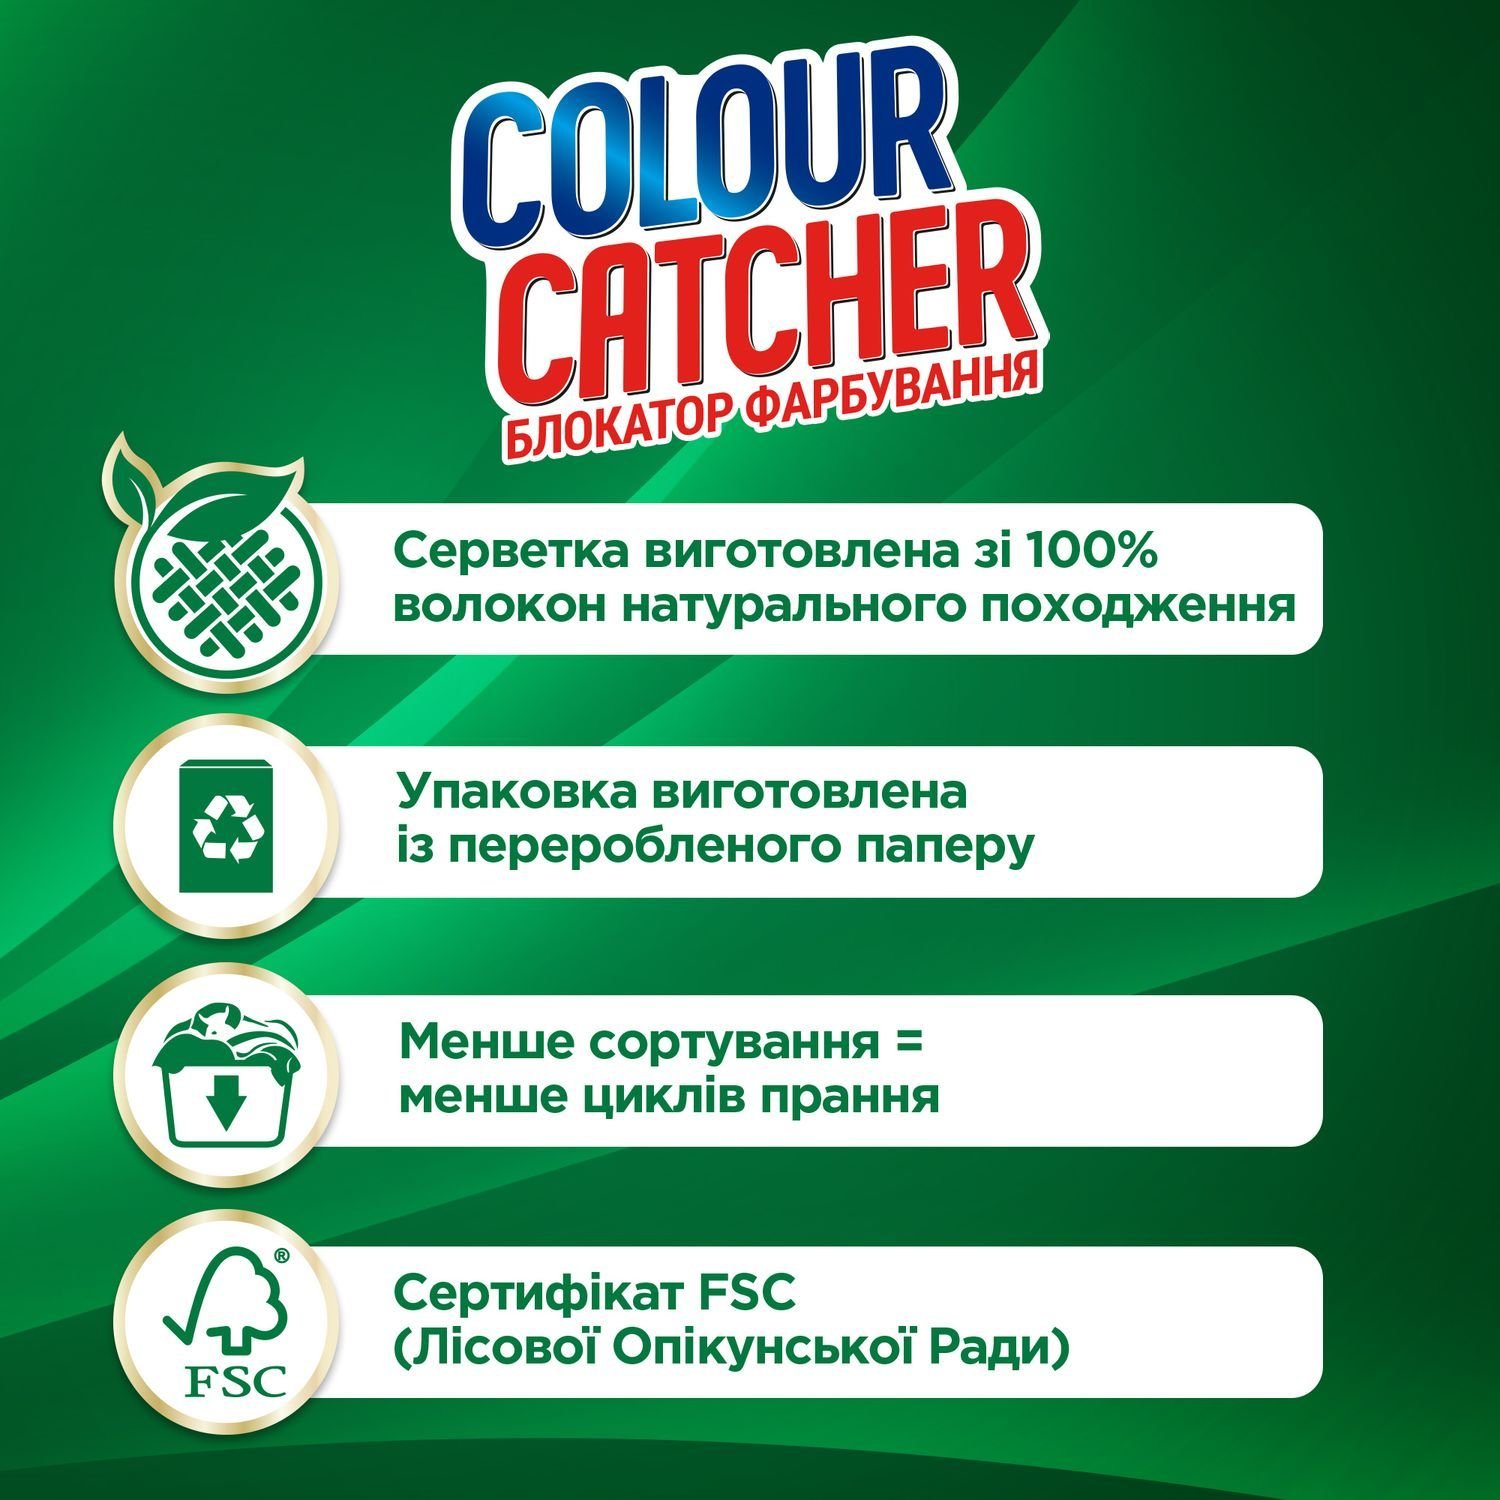 Салфетки для стирки K2r Colour Catcher цветопоглощение, 10 шт. - фото 5